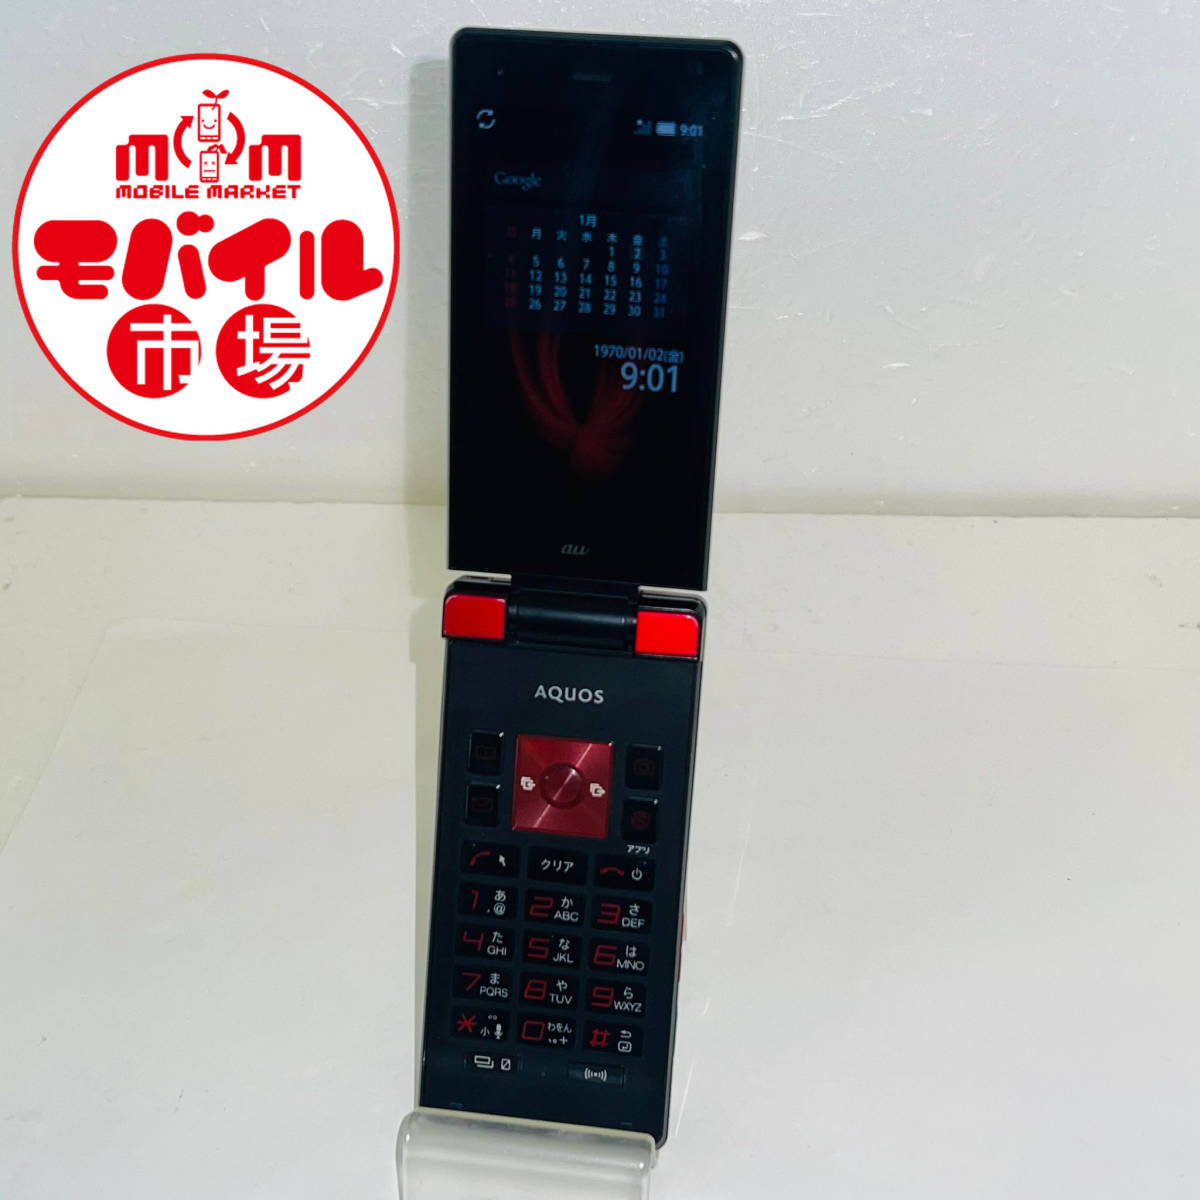  мобильный рынок *au AQUOS K SHF31*0 суждение * красный & черный *galake-* мобильный корпус * бесплатная доставка (H21)